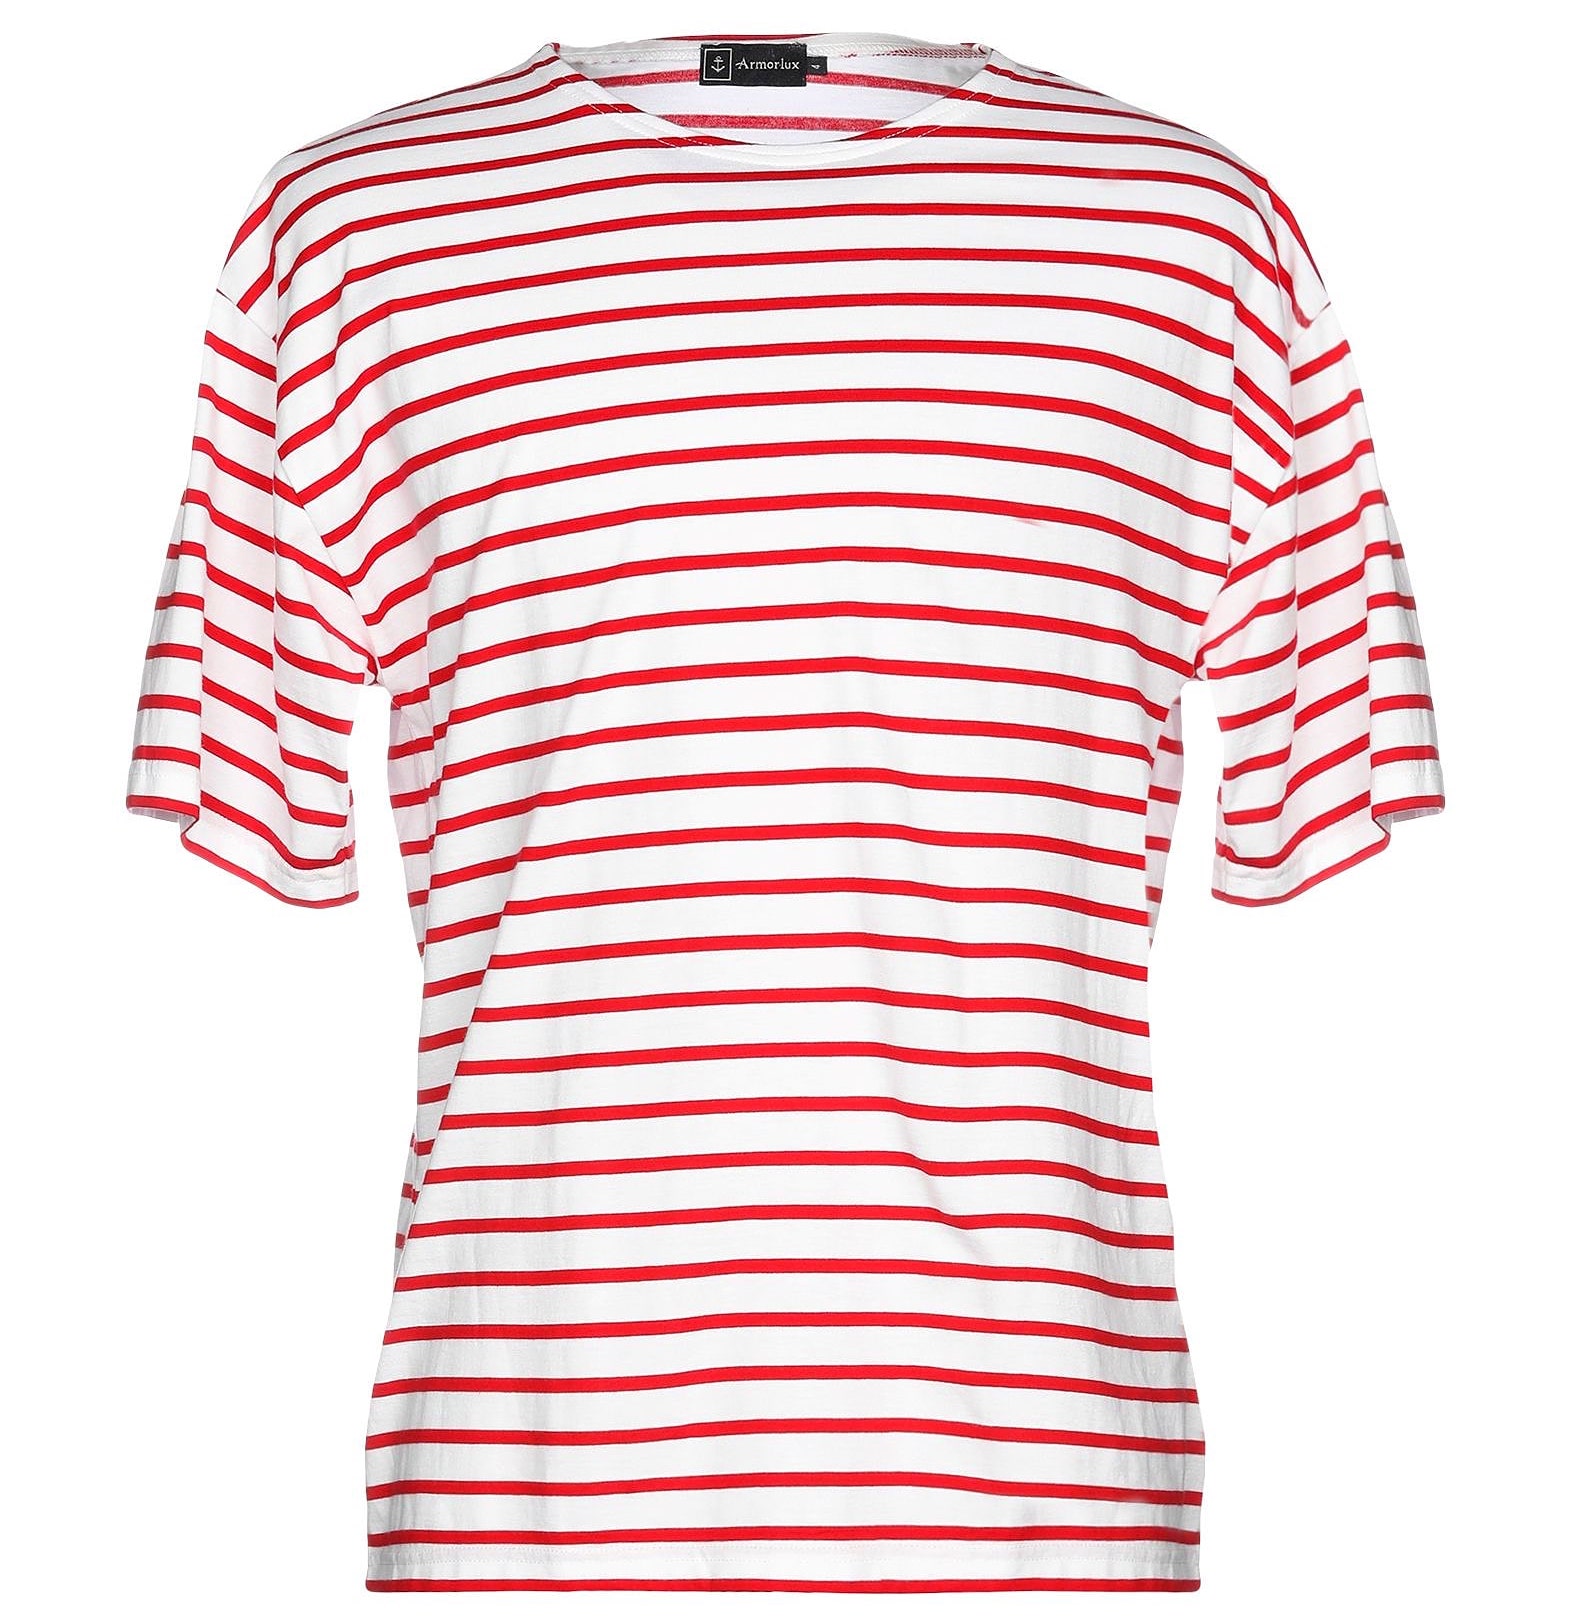 赤tシャツ コーデ メンズ特集 ハツラツとした印象を与える大人の着こなし おすすめアイテムを紹介 メンズファッションメディア Scorecardshops 男前研究所